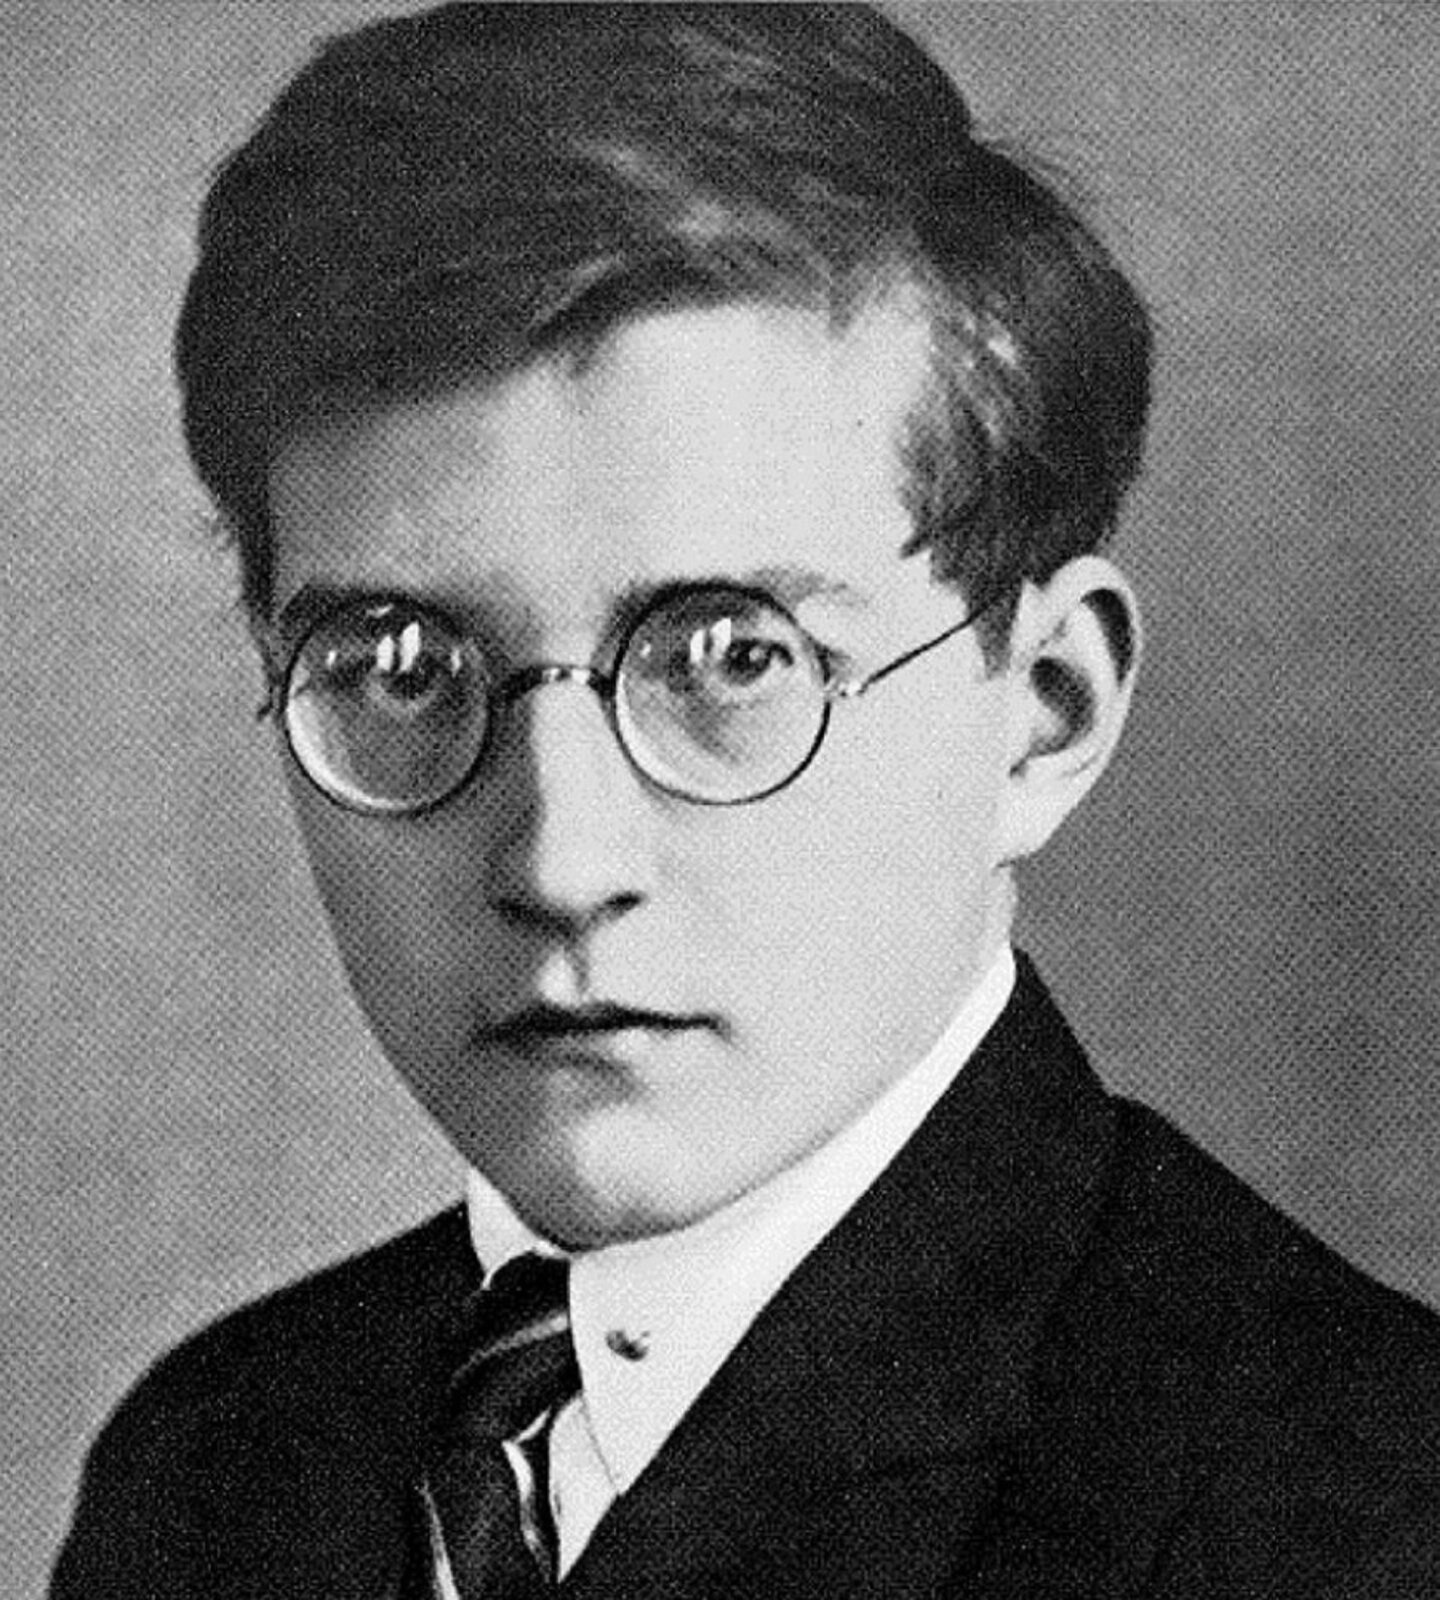 Ilustracja przedstawia Dymitra Szostakowicza jest to rosyjski kompozytor, pianista i pedagog; często uważany był za najwybitniejszego symfonika XX wieku. Mężczyzna w młodym wieku, który nosił okulary. Ma ciemne, gęste włosy, zaczesane na prawą stronę. Ubrany w białą koszulę, krawat i marynarkę.